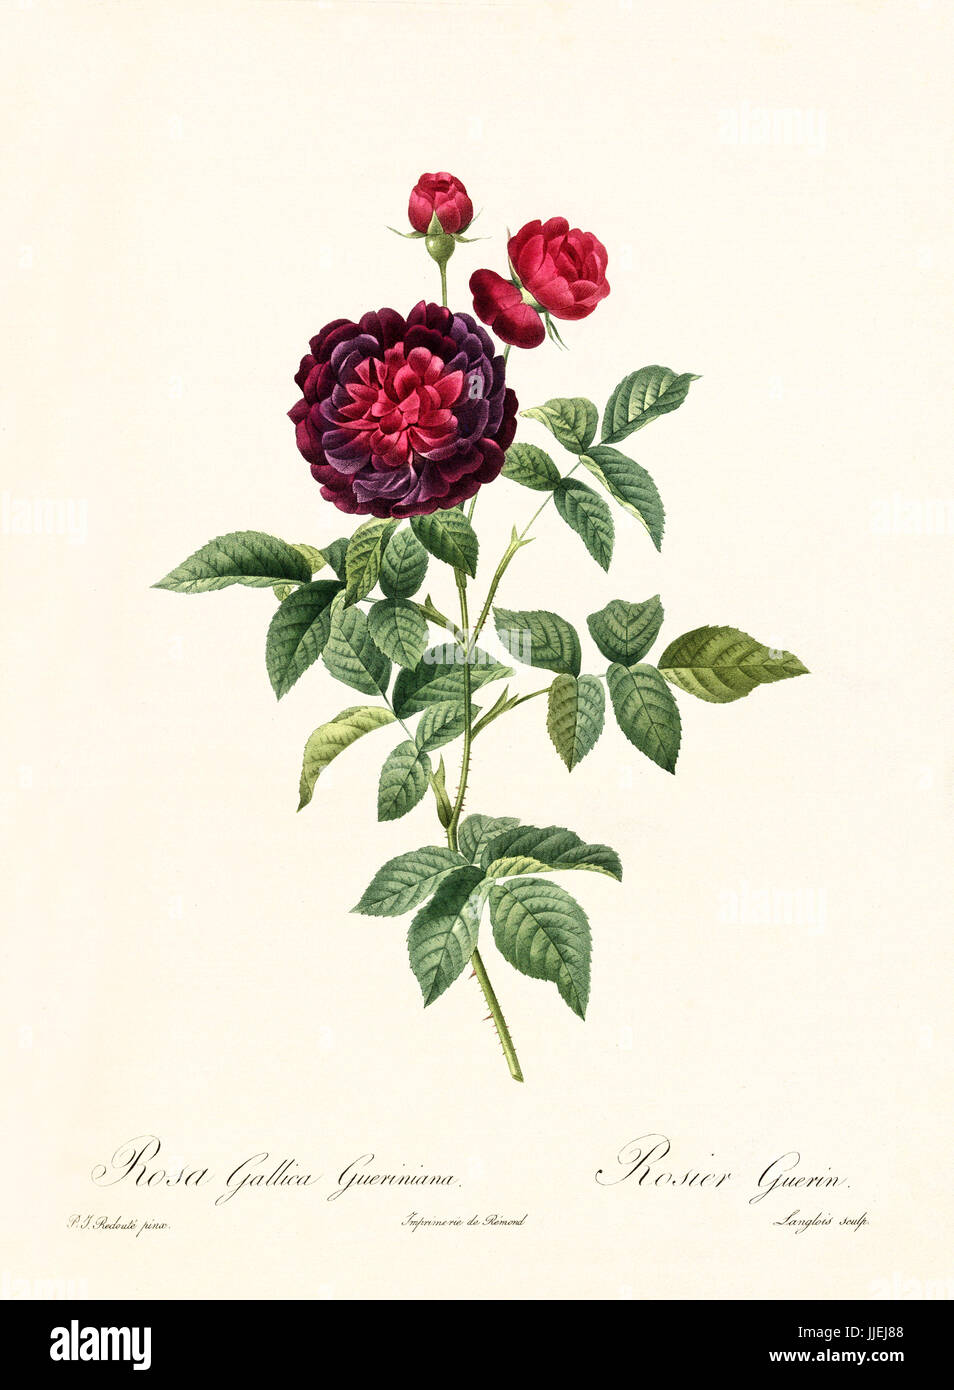 Vecchia illustrazione di rosa gallica gueriniana. Creato da P. R. Redoute, pubblicato su Les Roses, Imp. Firmin Didot, Parigi, 1817-24 Foto Stock